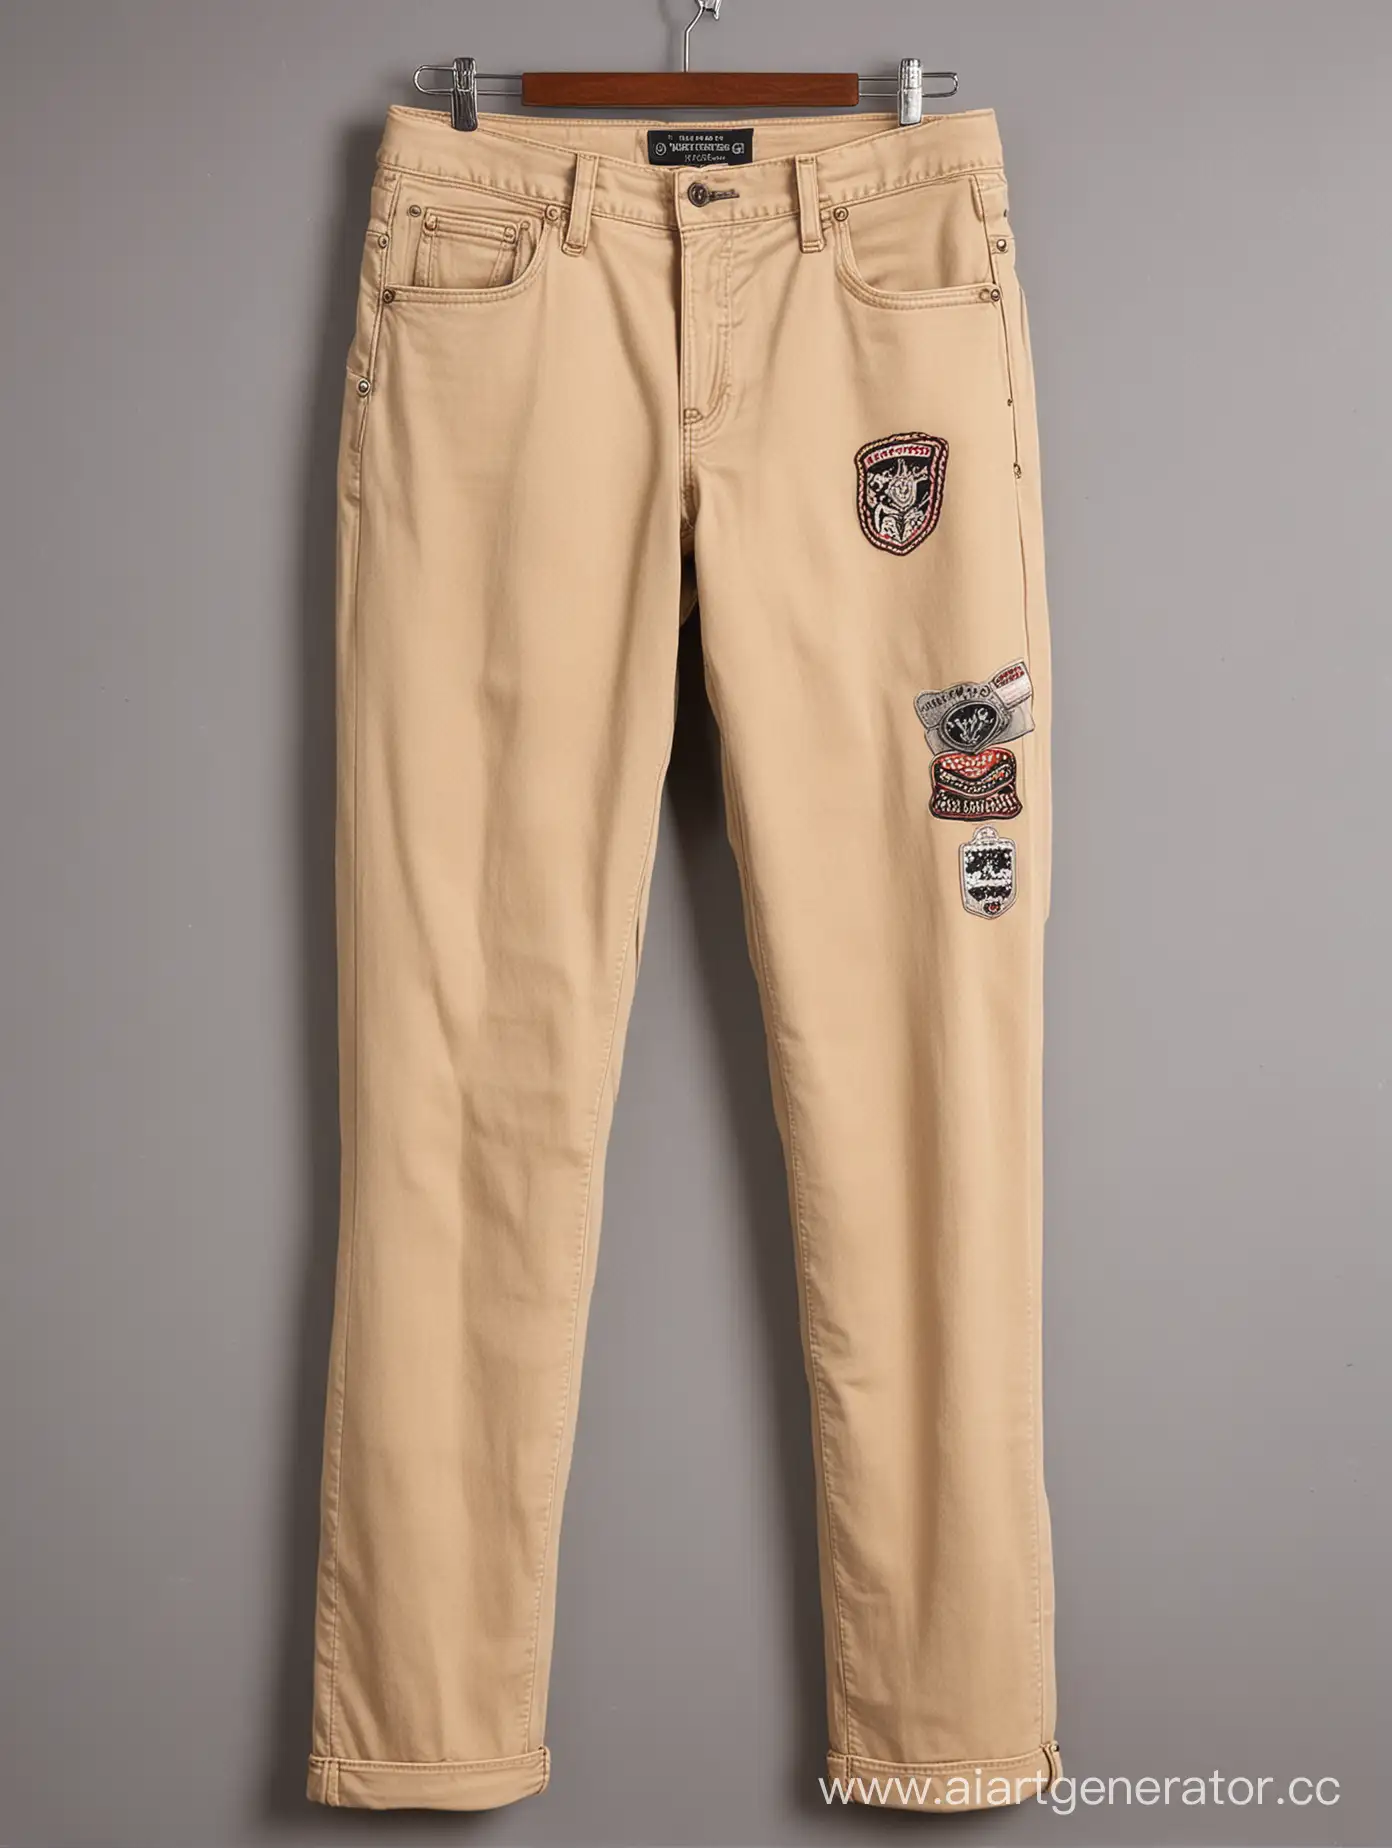 Слегка потрепаные широкие джинсы песчаного цвета в стиле "Old school" с нашивками в стиле "Old school" на бёдрах и цепочкой около правого кармана. 